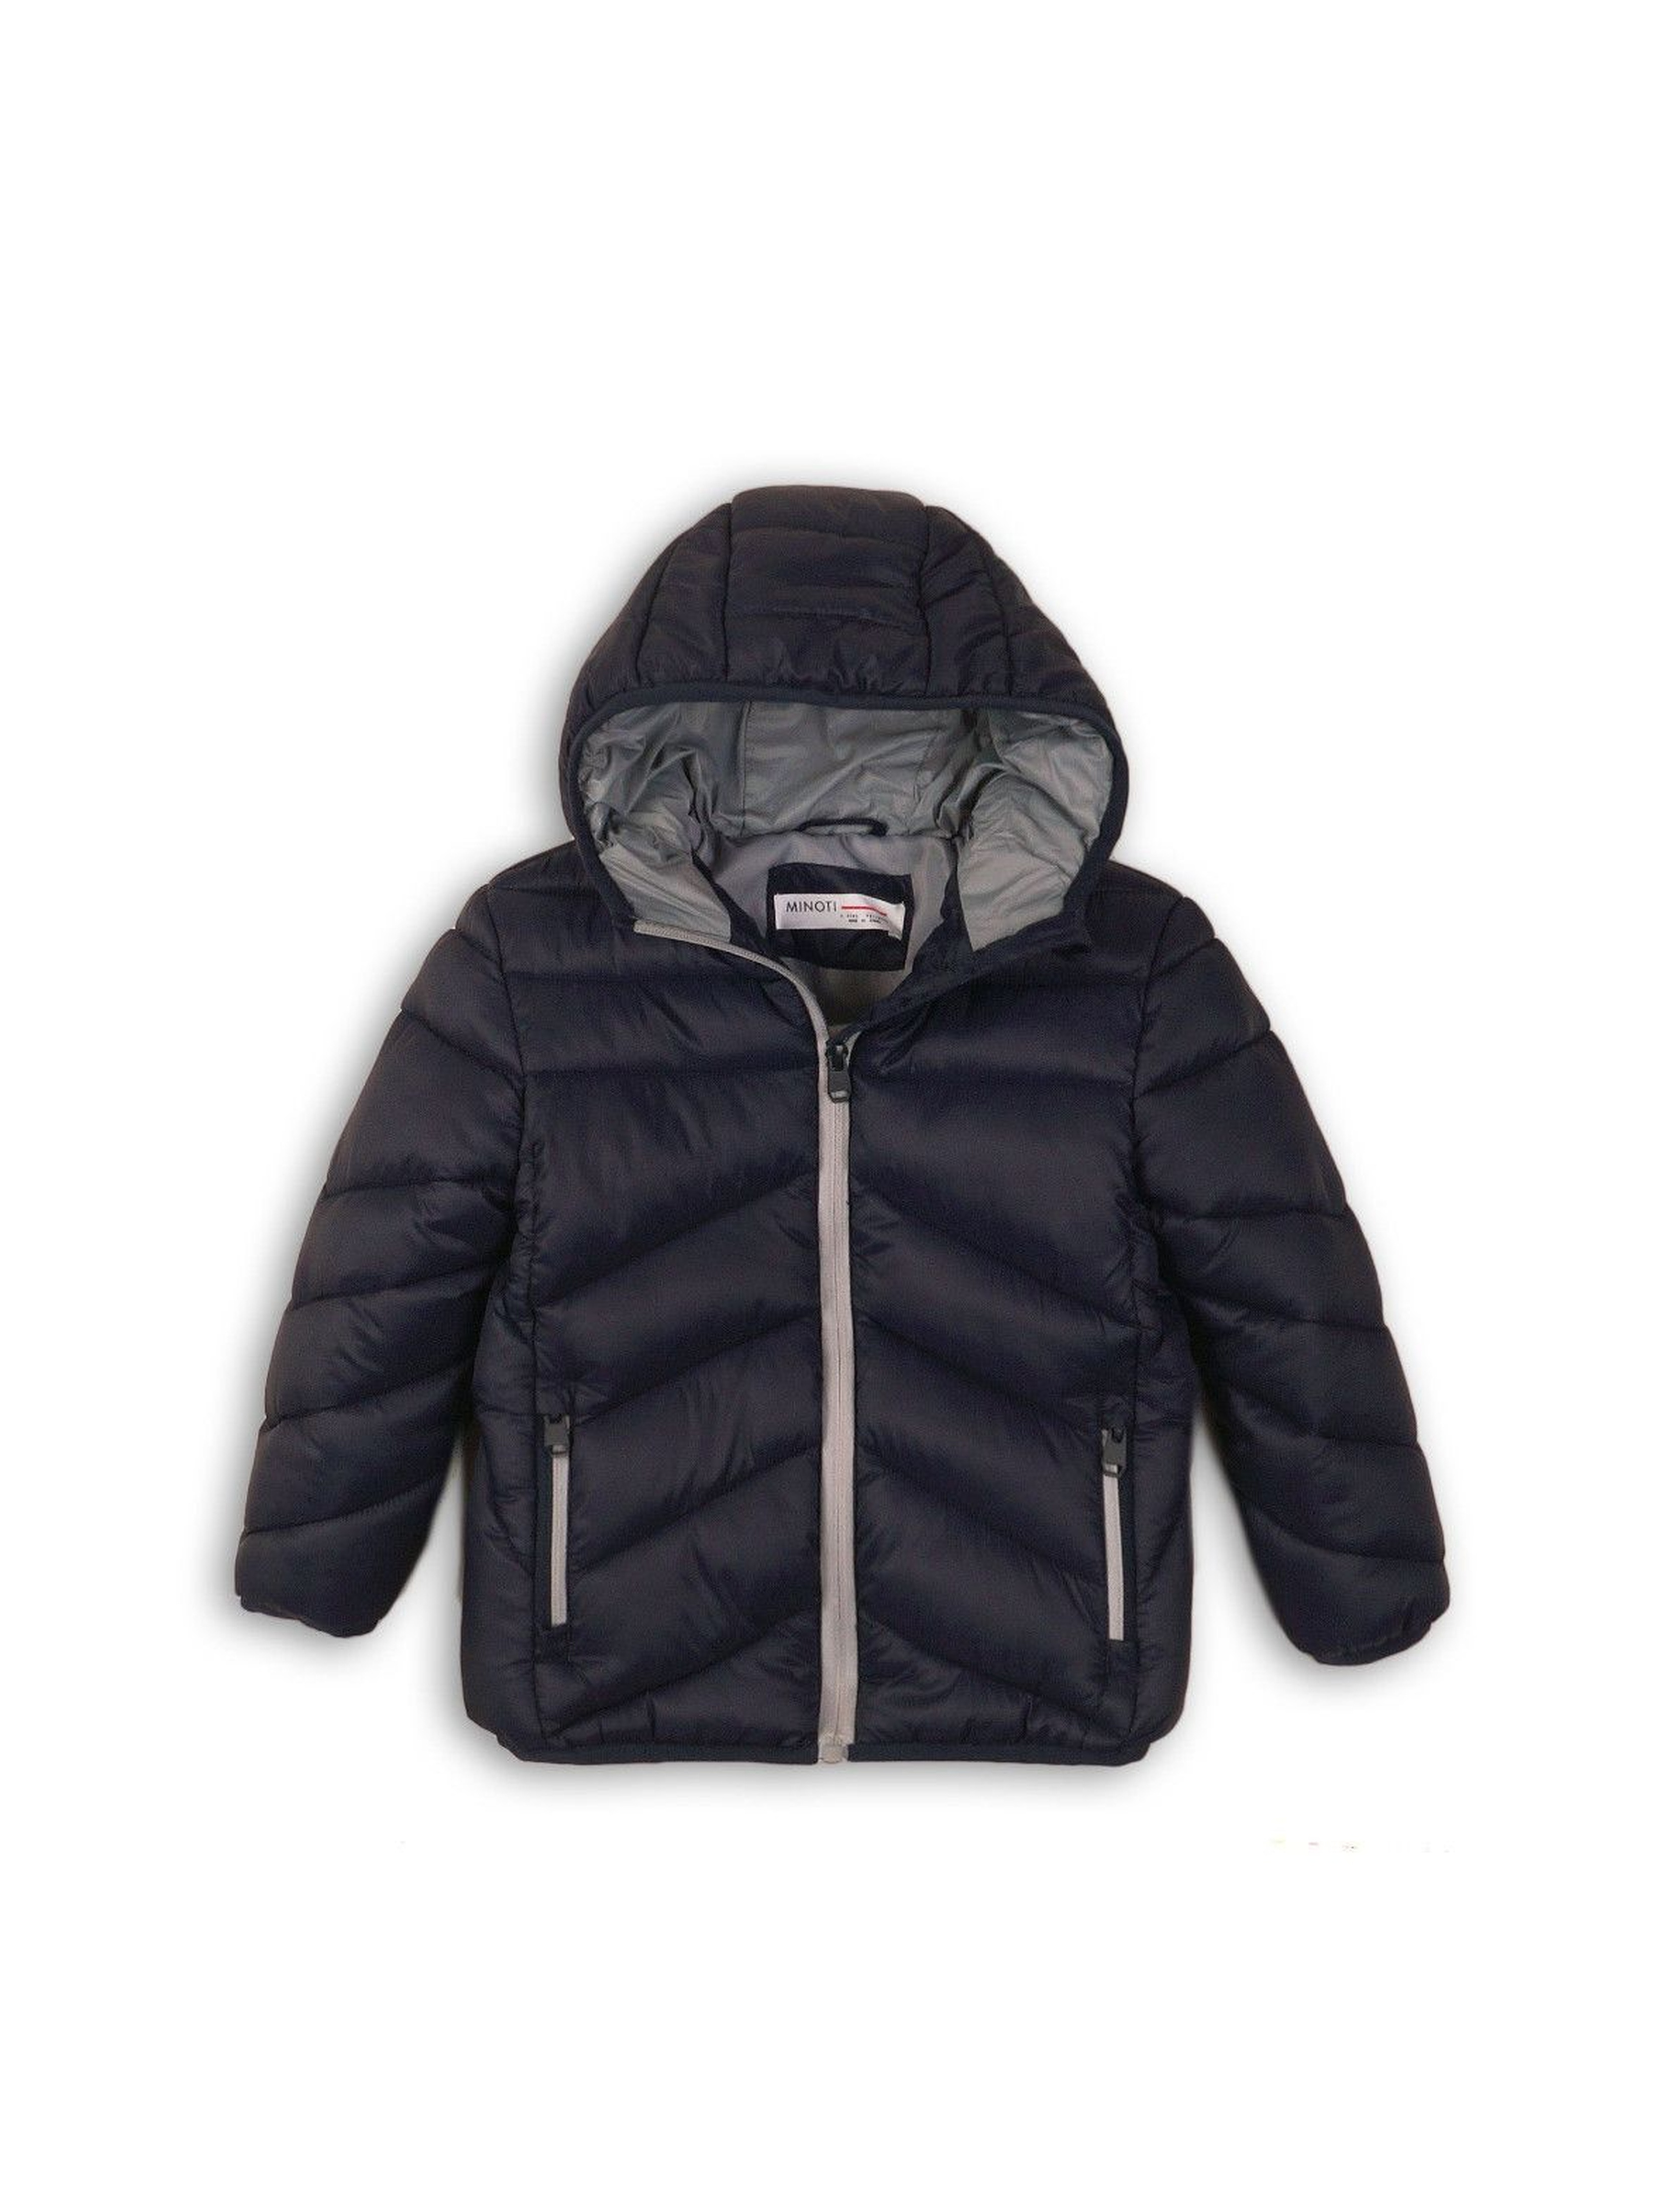 Granatowa pikowana kurtka dla chłopca- pikowana z kapturem